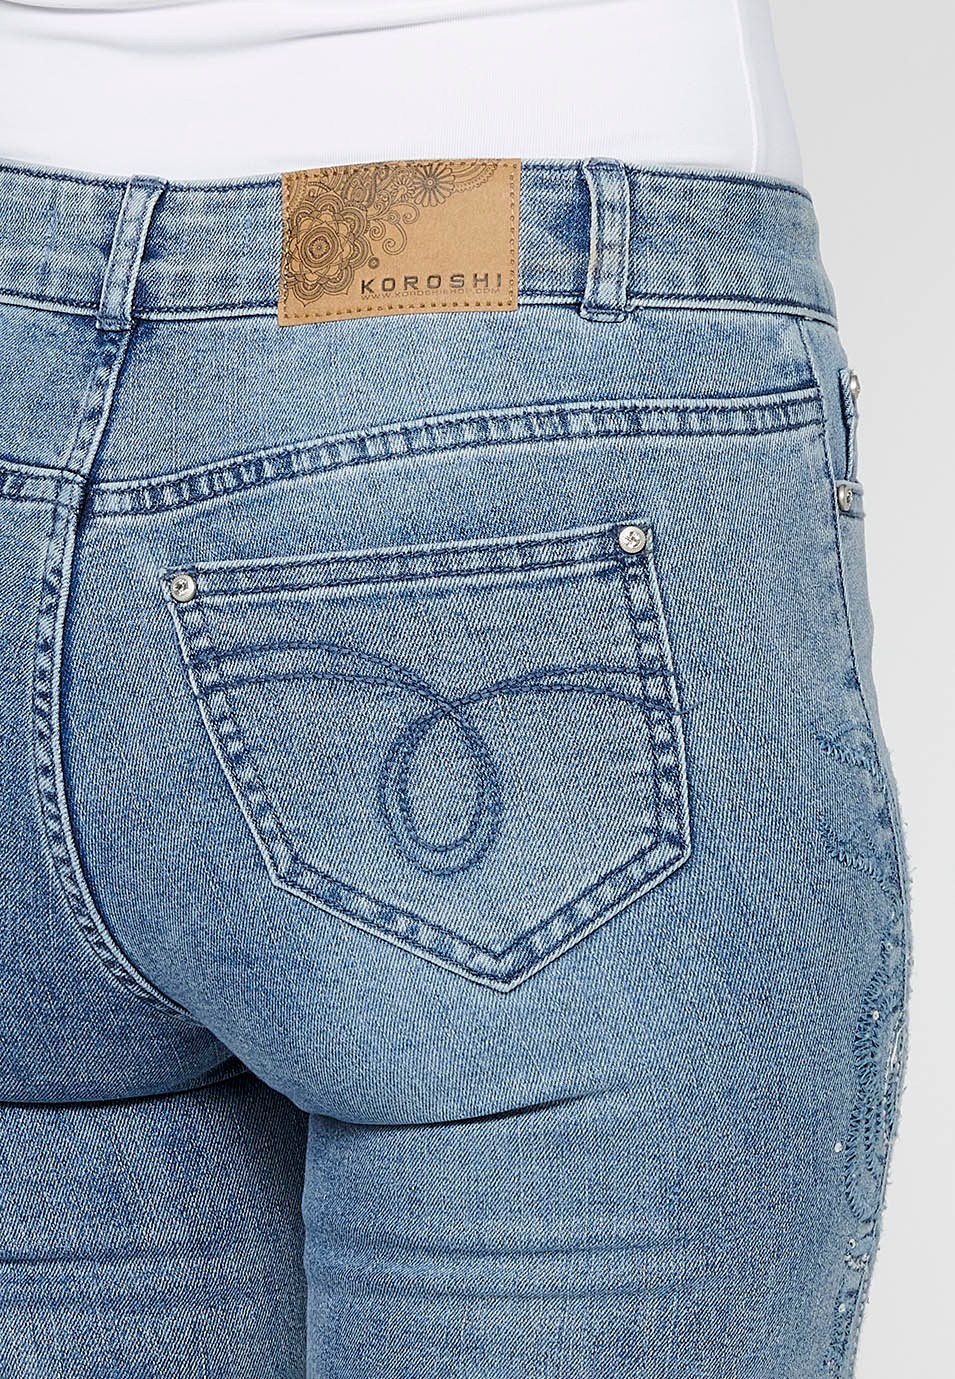 Pantalon long évasé en jean avec fermeture éclair sur le devant et détails brodés de fleurs bleu clair pour femme 7